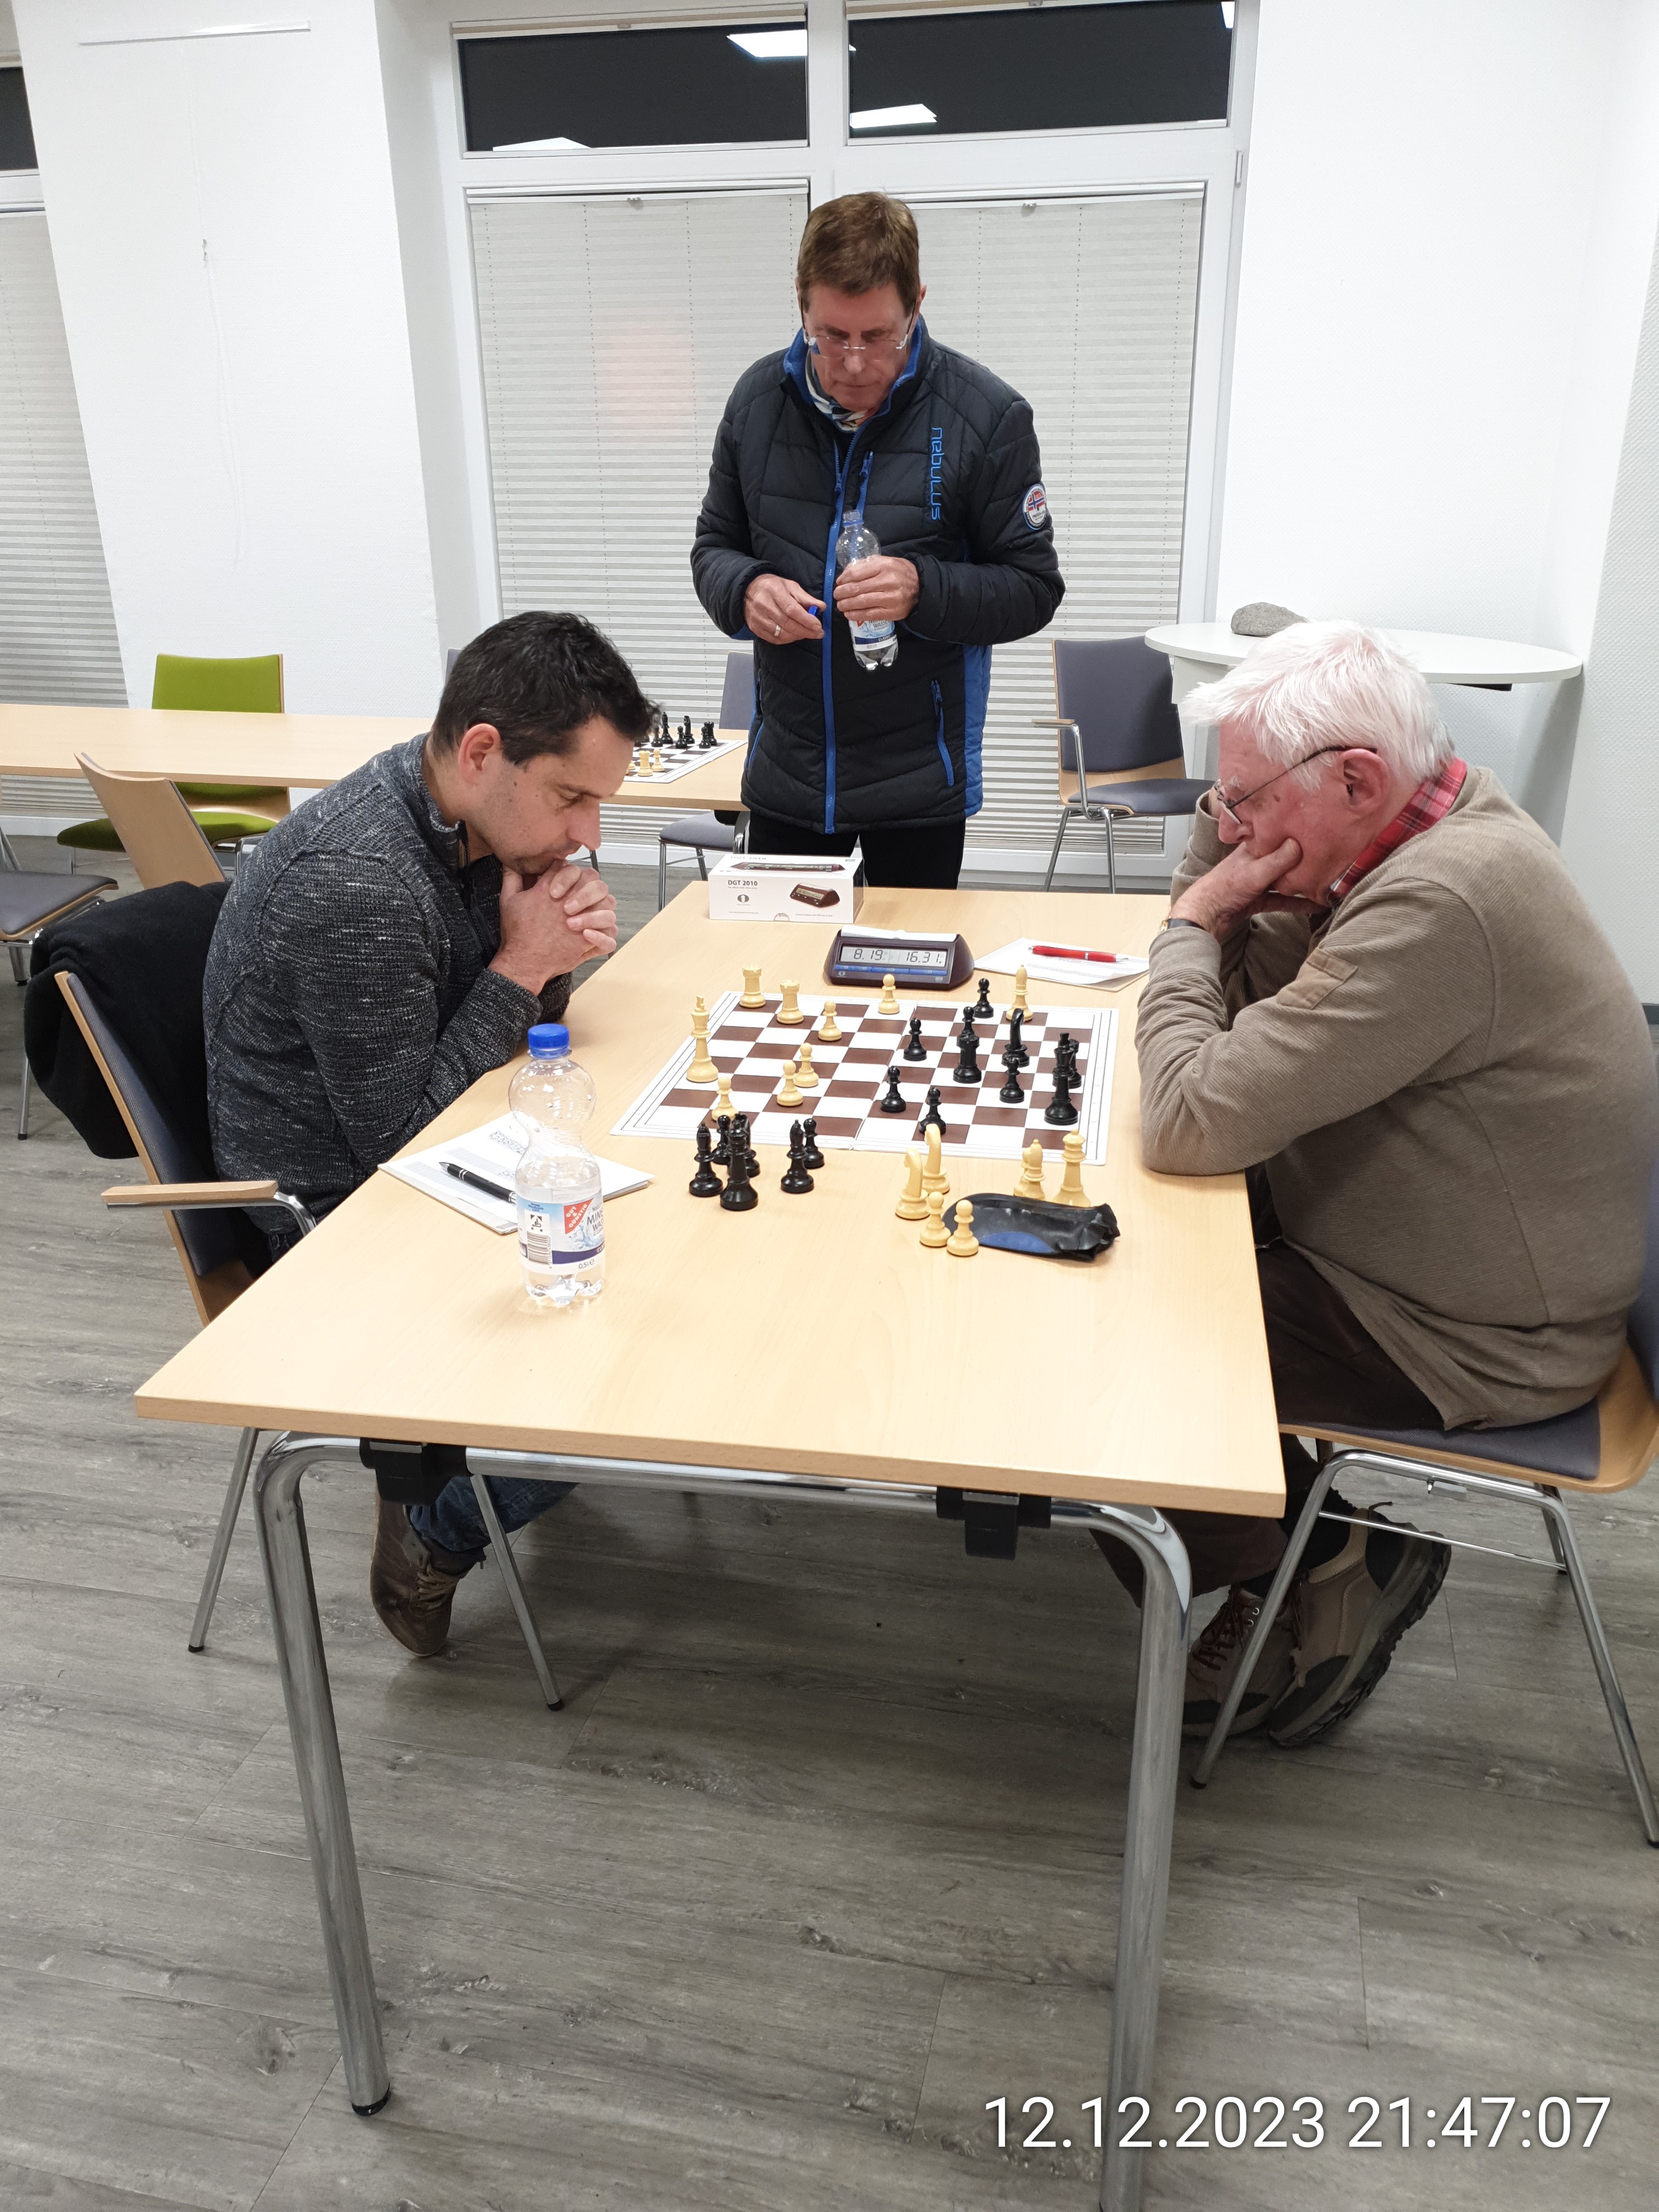 Vereinsmeisterschaft im klassischen Schach 2023. Holger Kowalski und Detlef Adam mit der entscheidenden Partie der letzten siebten Runde